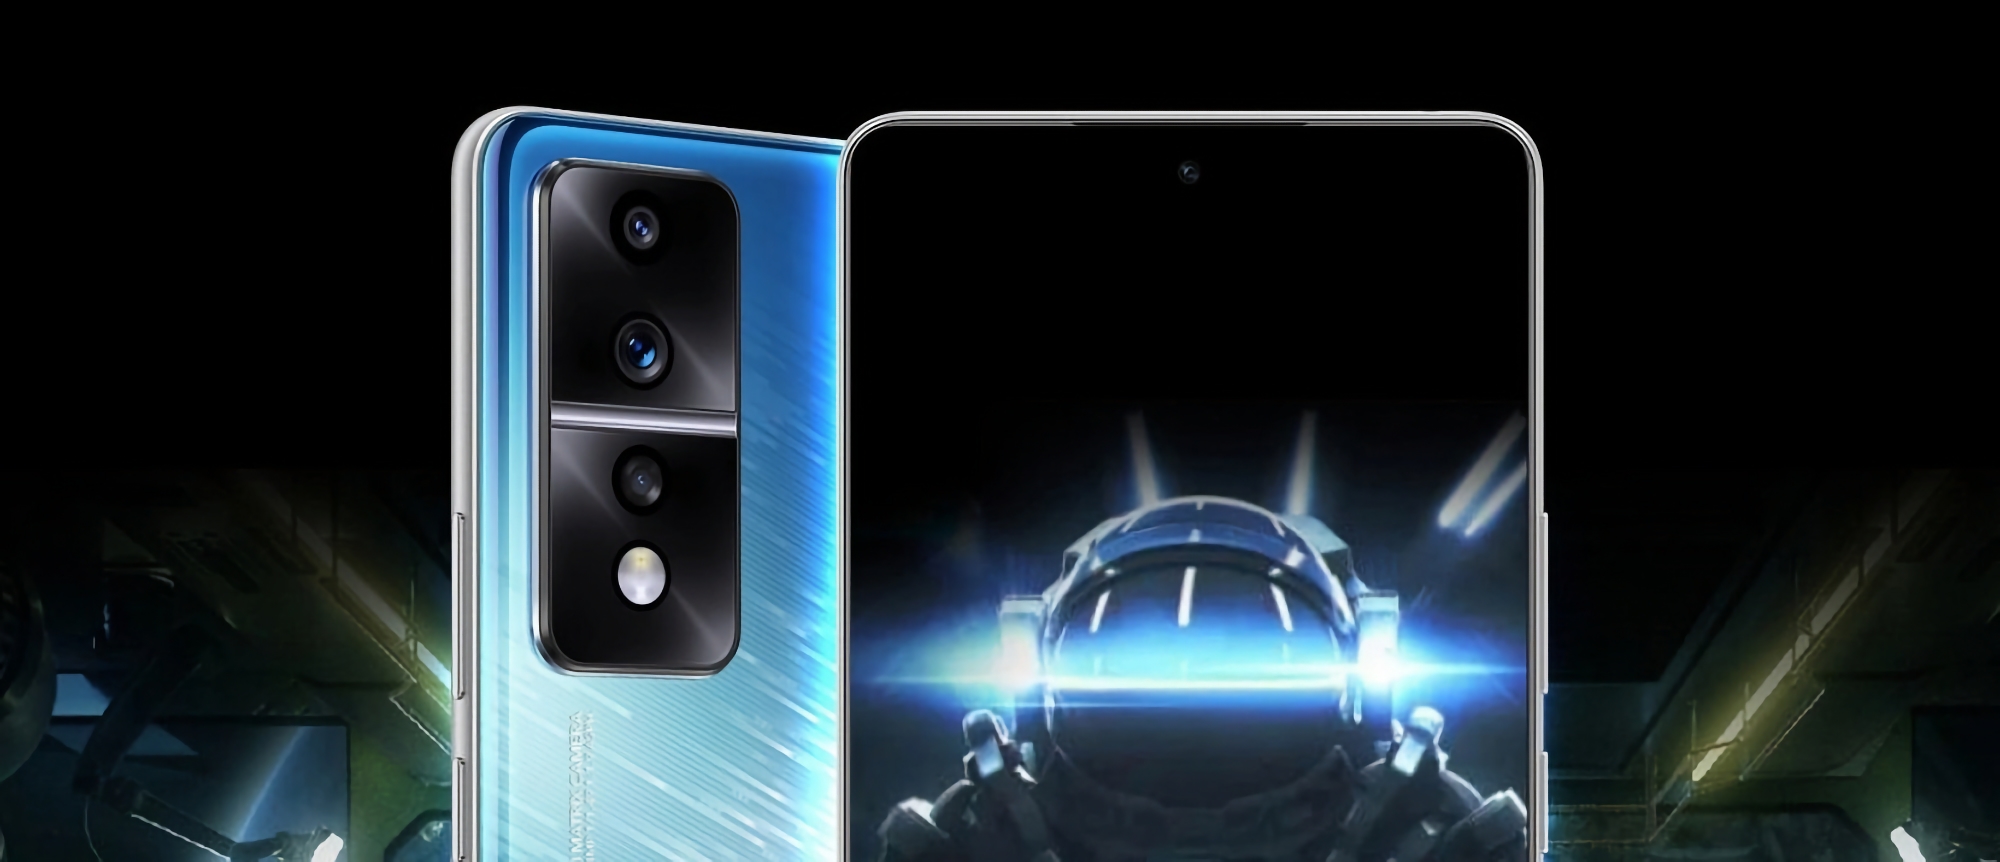 Gamingowy smartfon Honor 80 GT dostanie aparat 54 MP, wyświetlacz OLED 120 Hz, układ Snapdragon 8+ Gen 1 i cenę około 430 dolarów